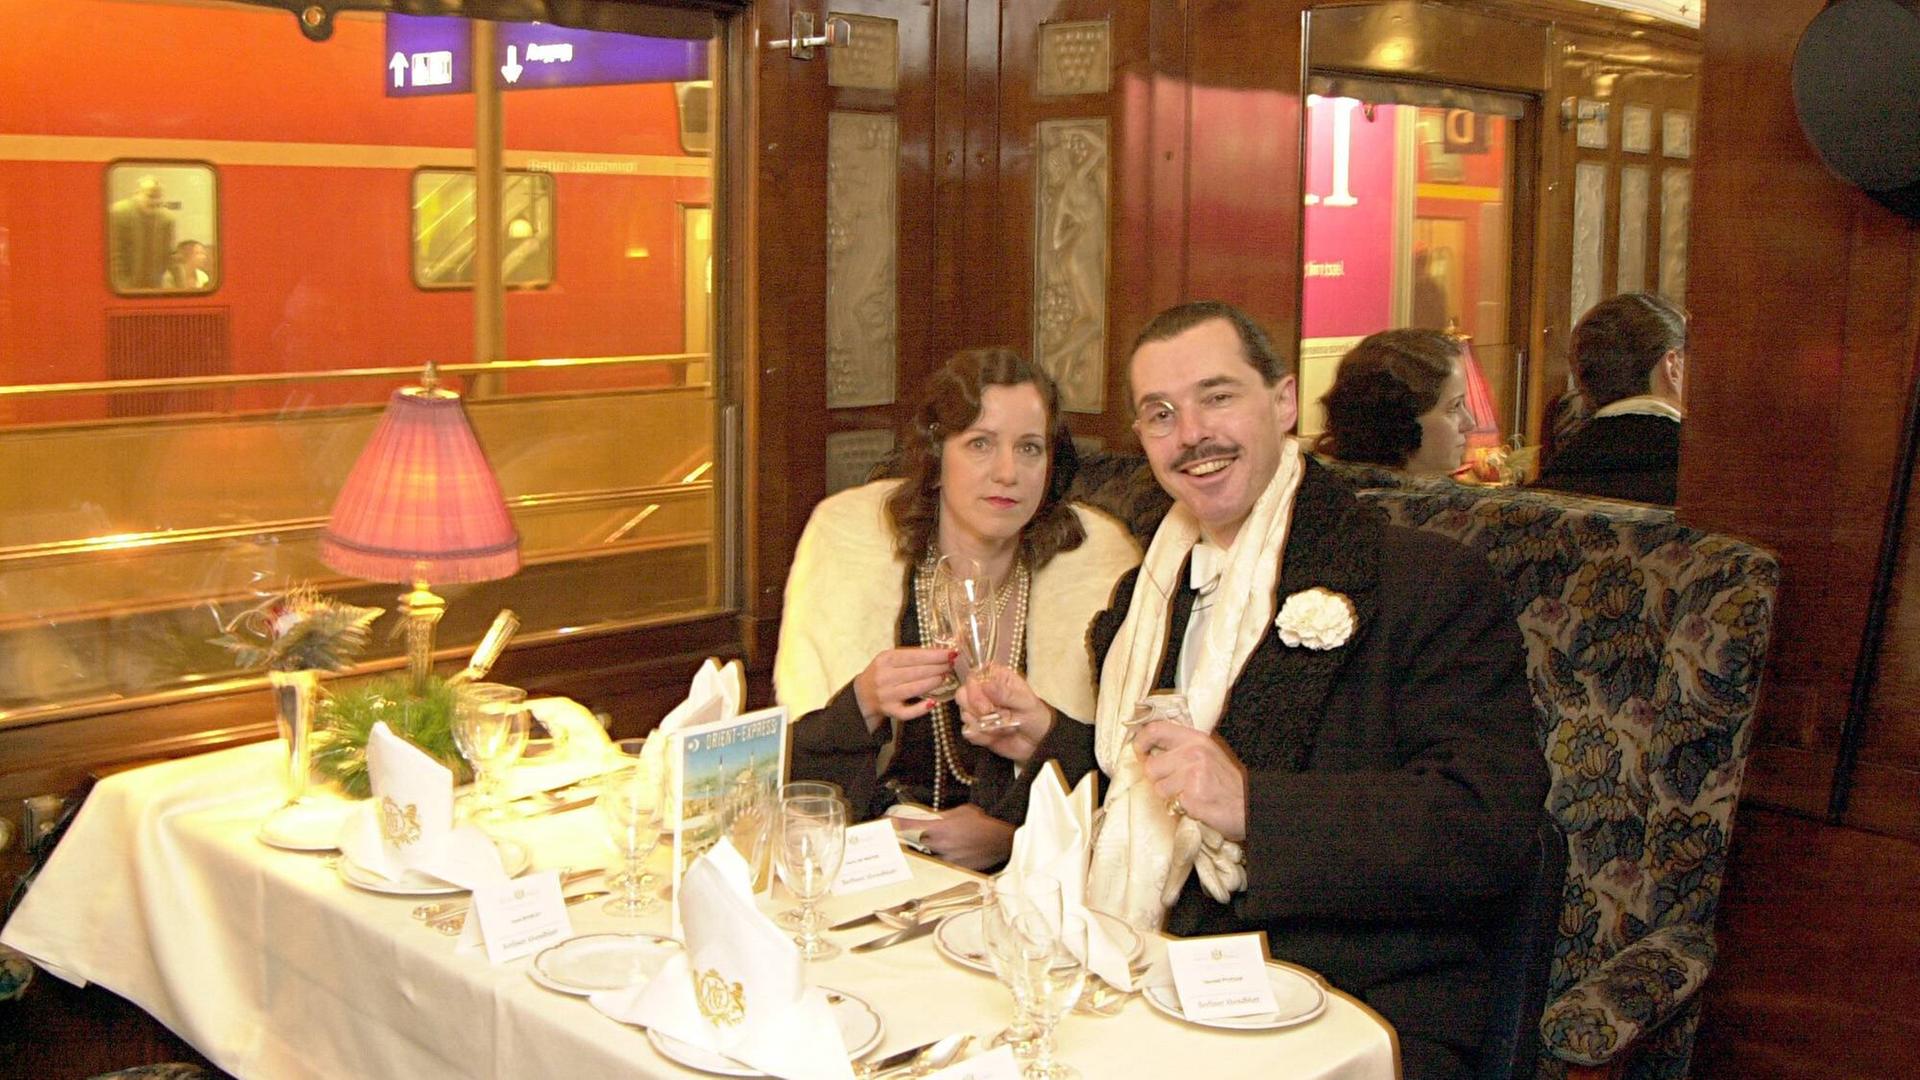 Henry de Winter (Sänger) und Constance Pelzer (Geschäftsinhaberin) im Speisewagen vom Orient-Express